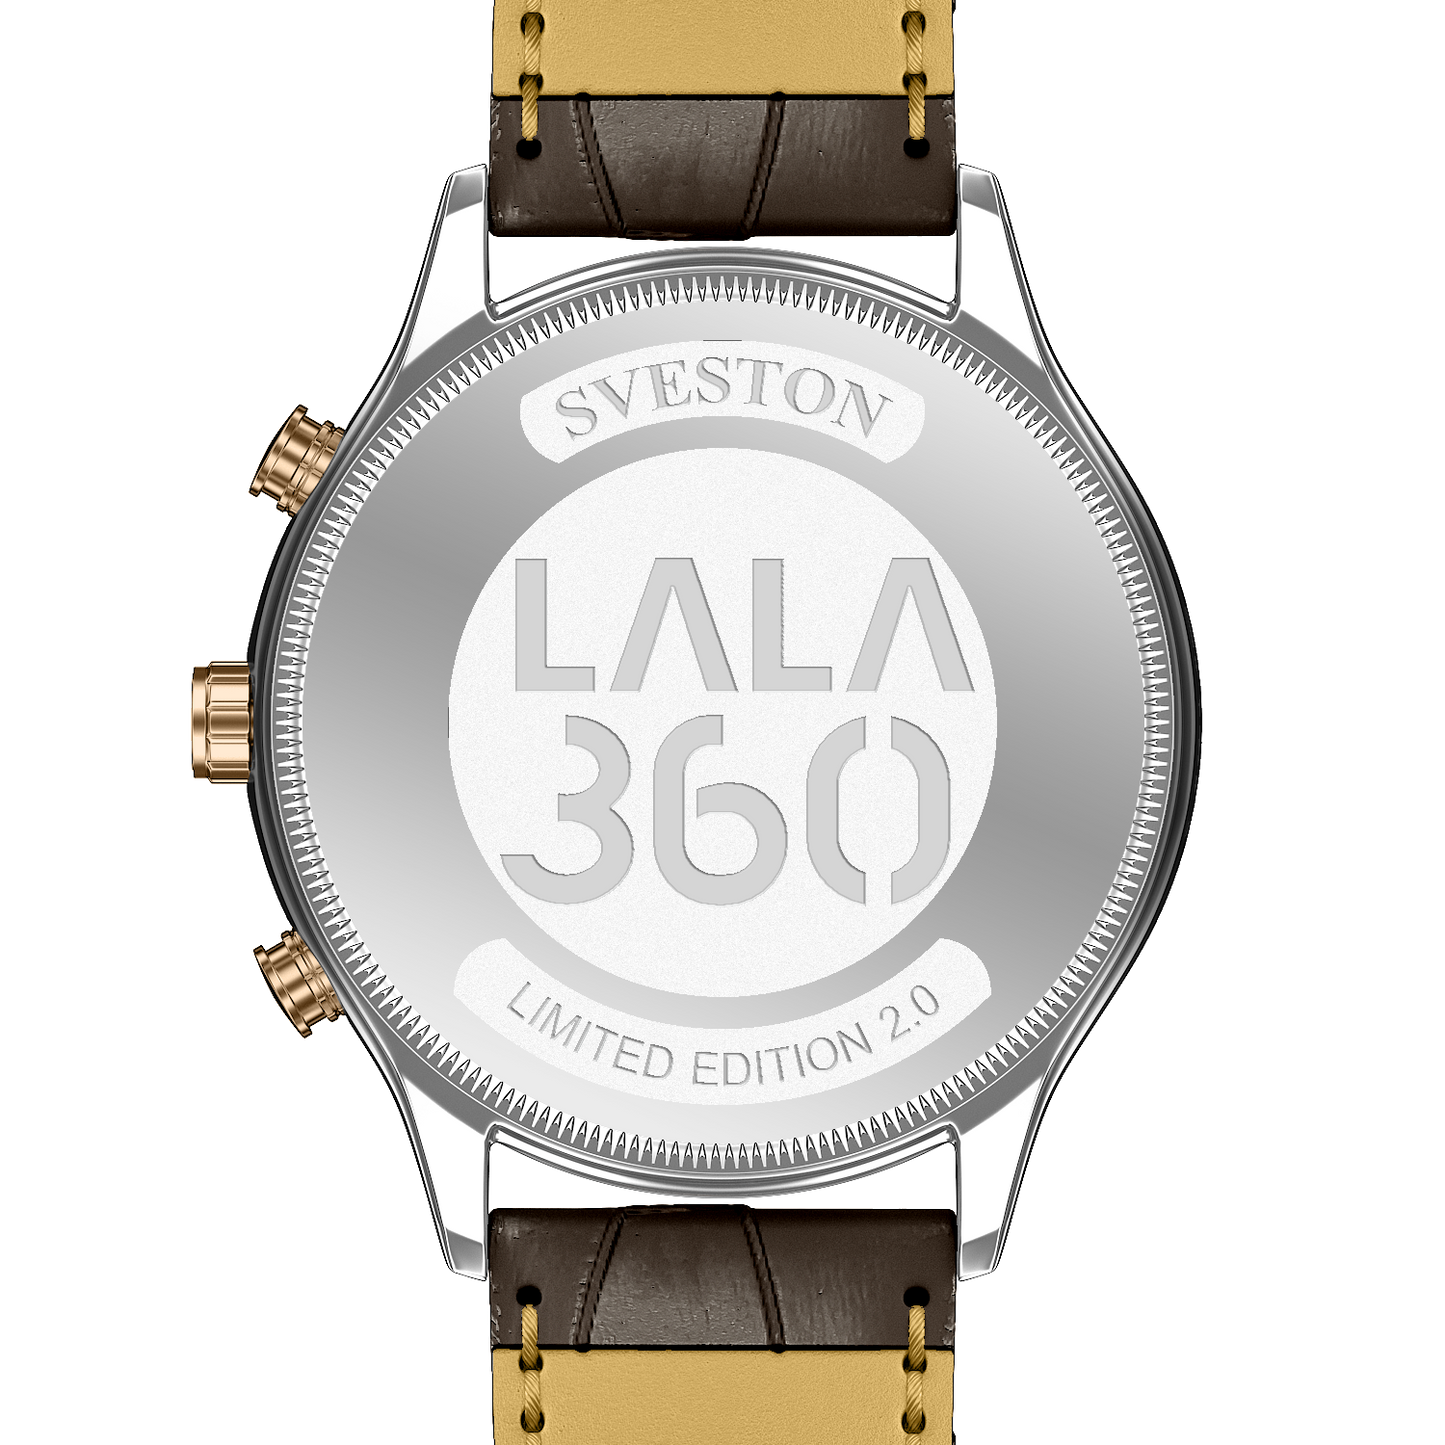 SVESTON LALA 360 Watch